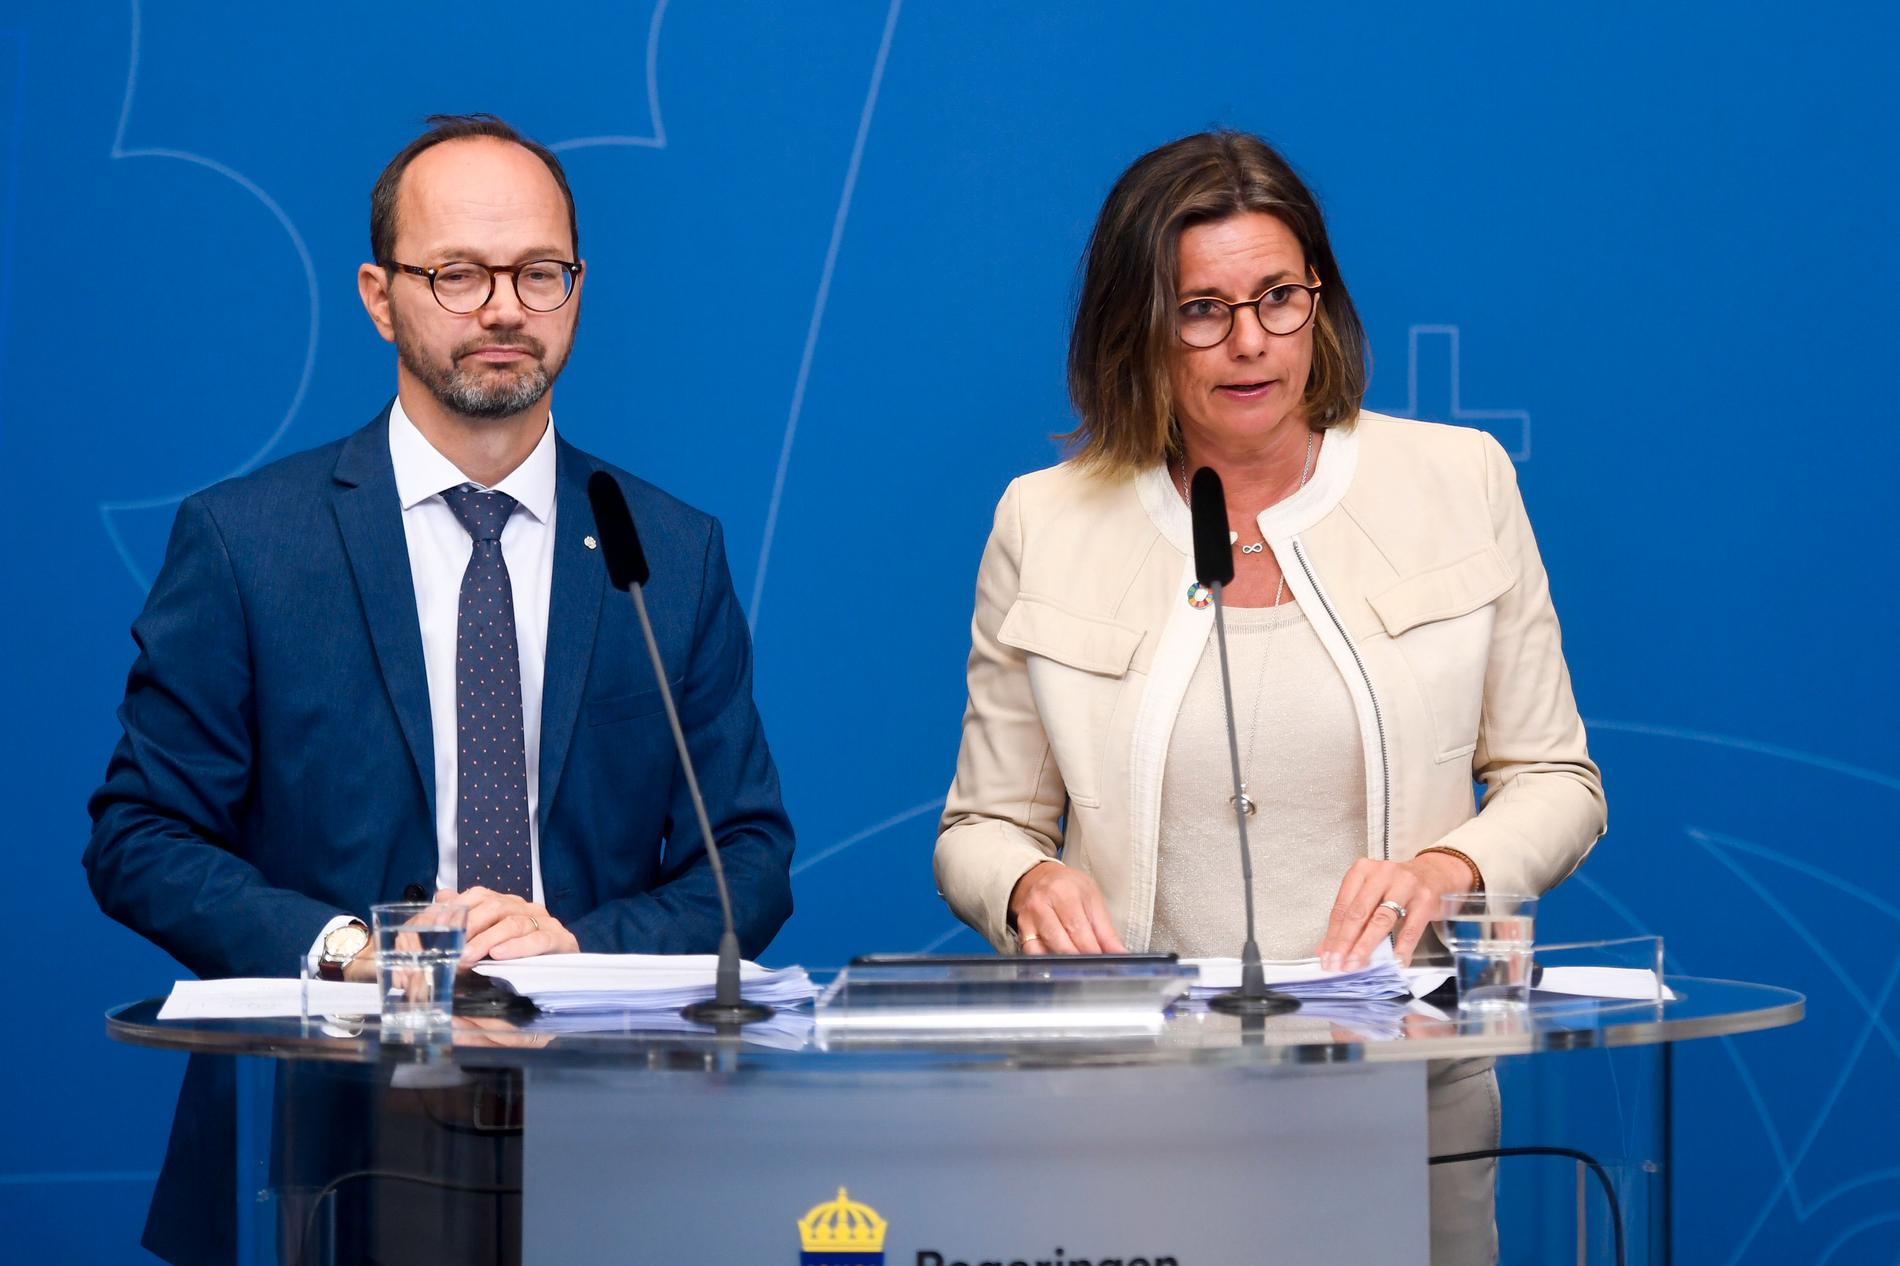 Infrastrukturminister Tomas Eneroth (S) och klimatminister Isabella Lövin (MP) presenterar regeringens plan för vägar, sjöfart och järnväg de närmaste tio åren.